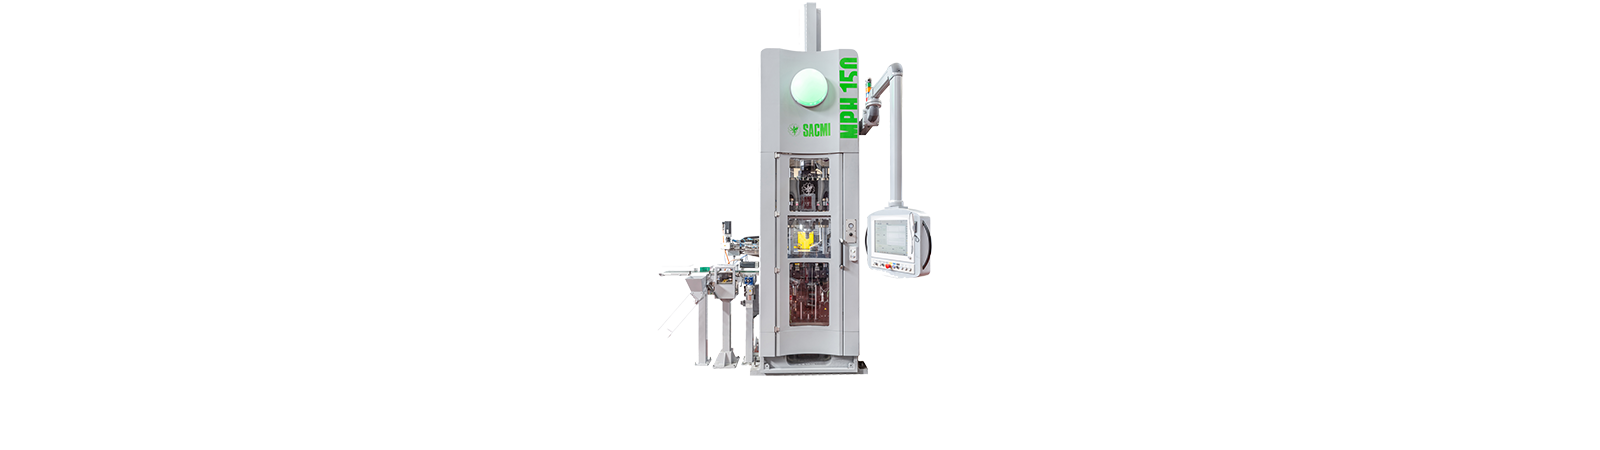 La nueva MPH150 se incorpora a la gama de prensas de polvo metálico